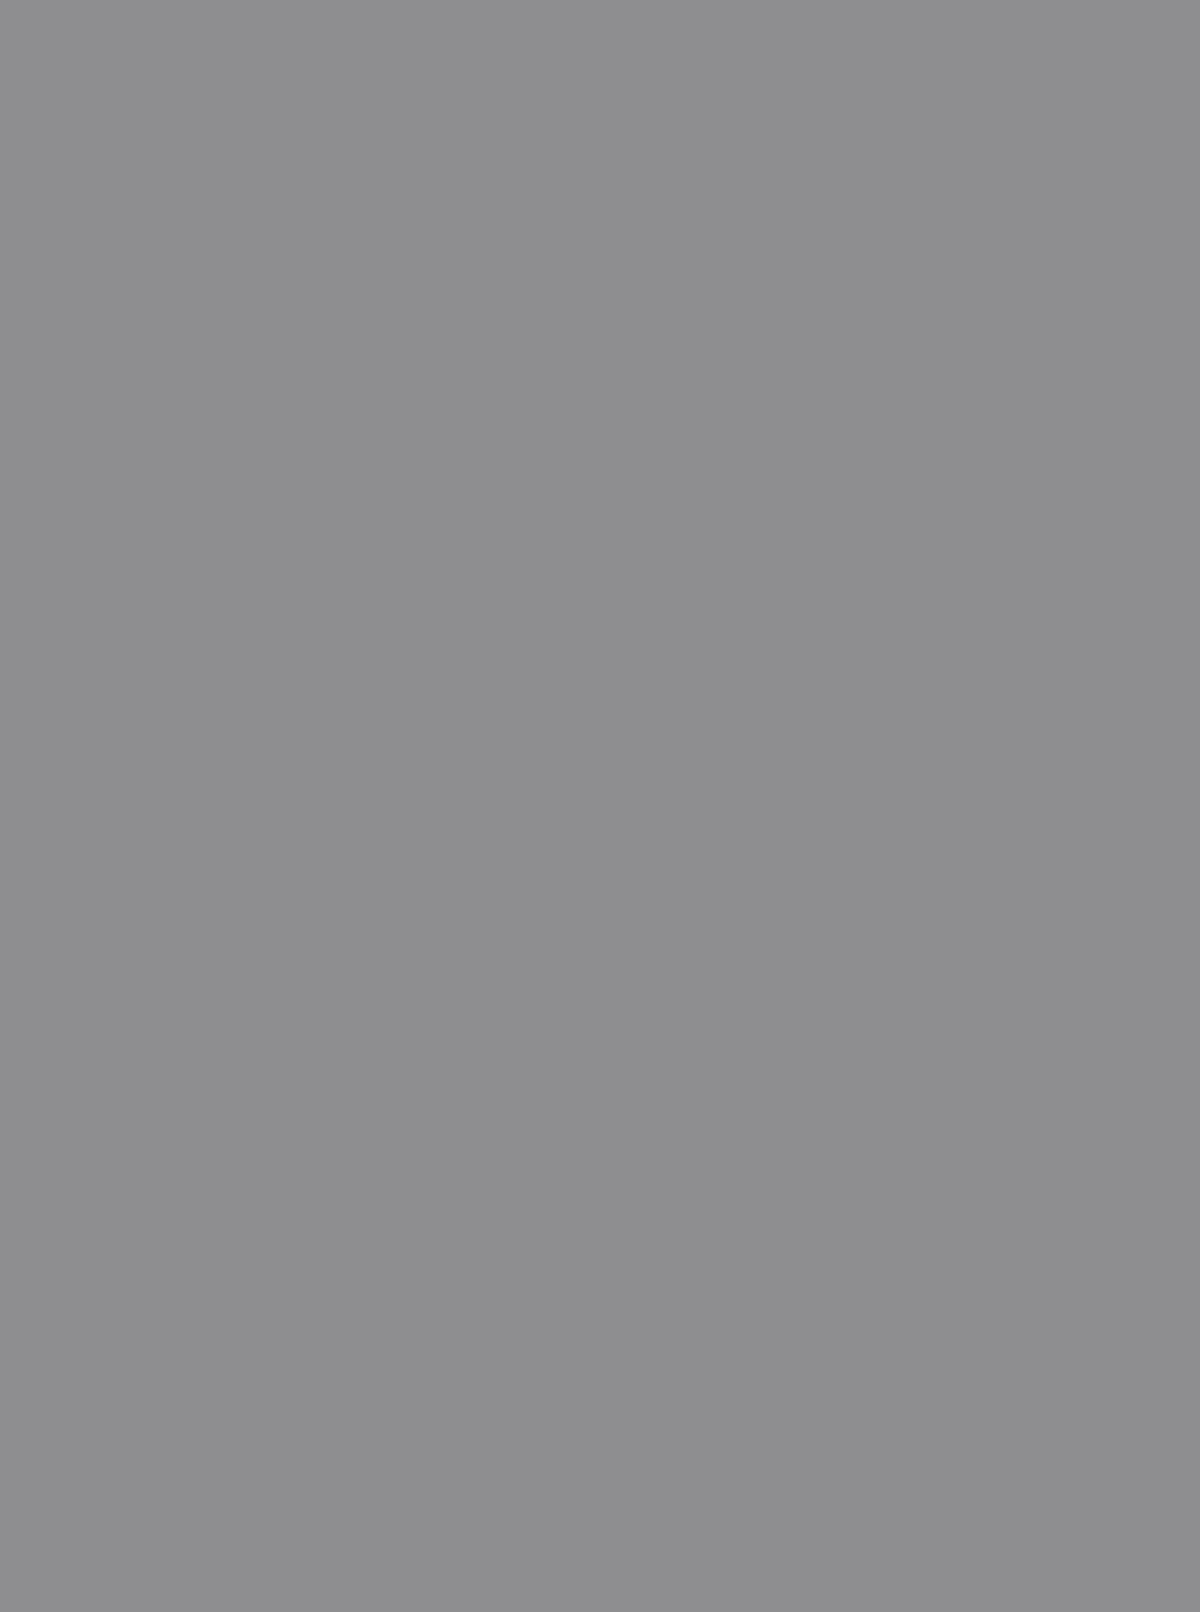 М. Нестеров. Лёля Прахова. Эскиз к фреске «Святая Варвара». 1894